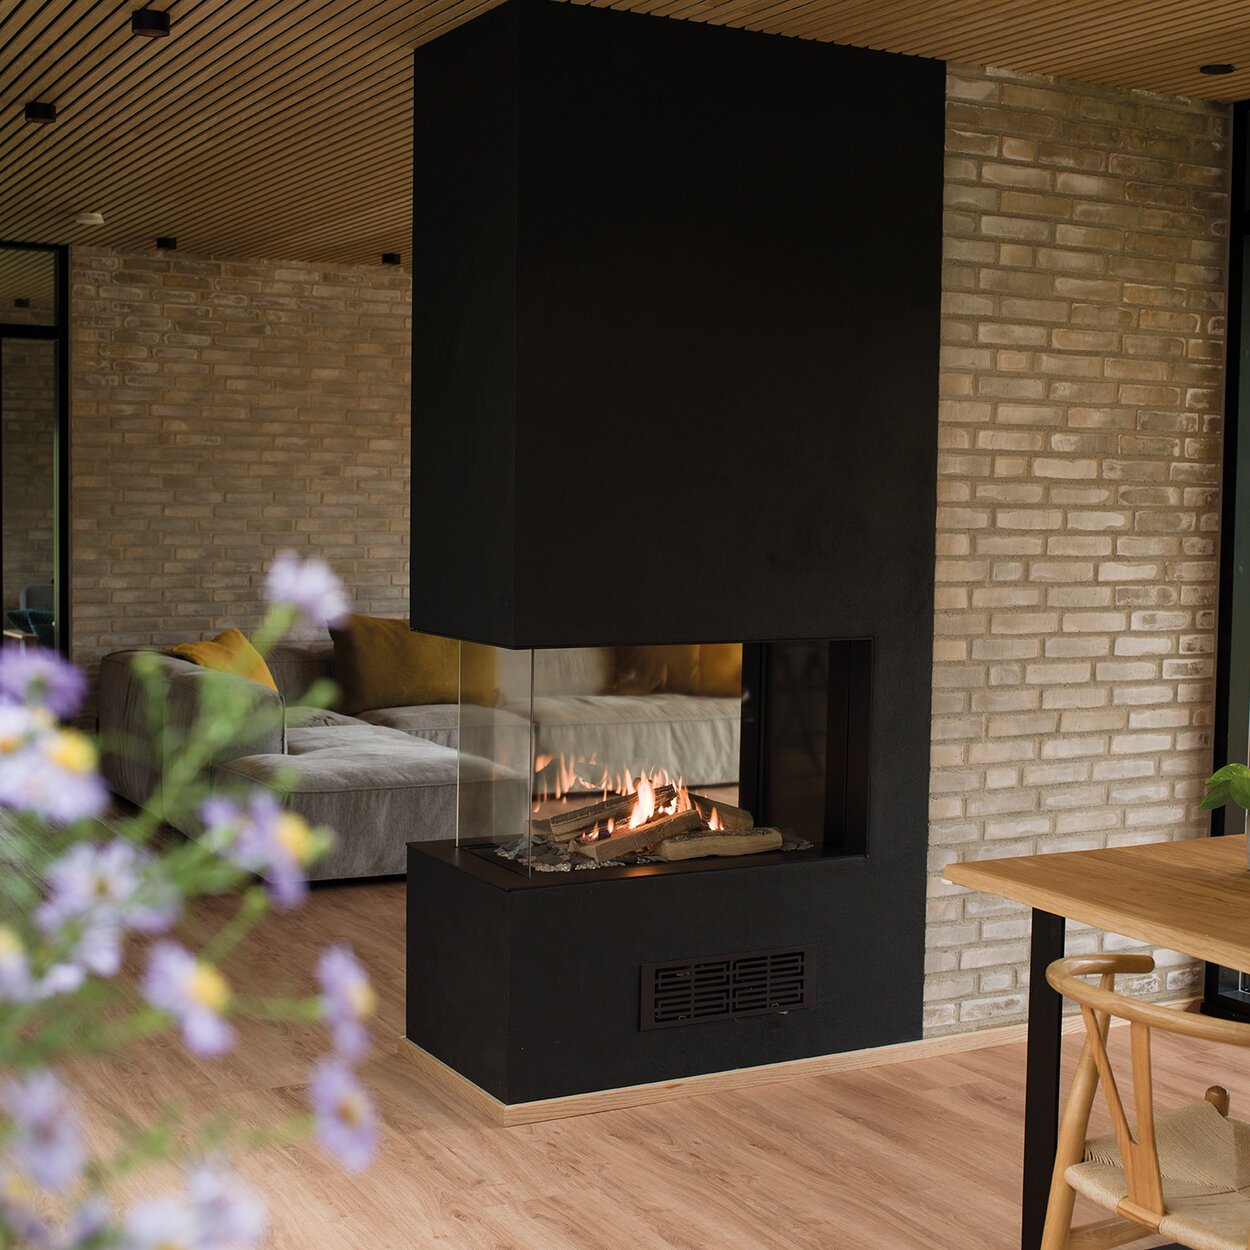 Gas-Kamin VISIO 70 RD steht als Raumteiler in einer schwarzen Trennwand und strukturiert so den eleganten Wohnraum mit Holzboden zwischen Wohnzimmer und Esstisch